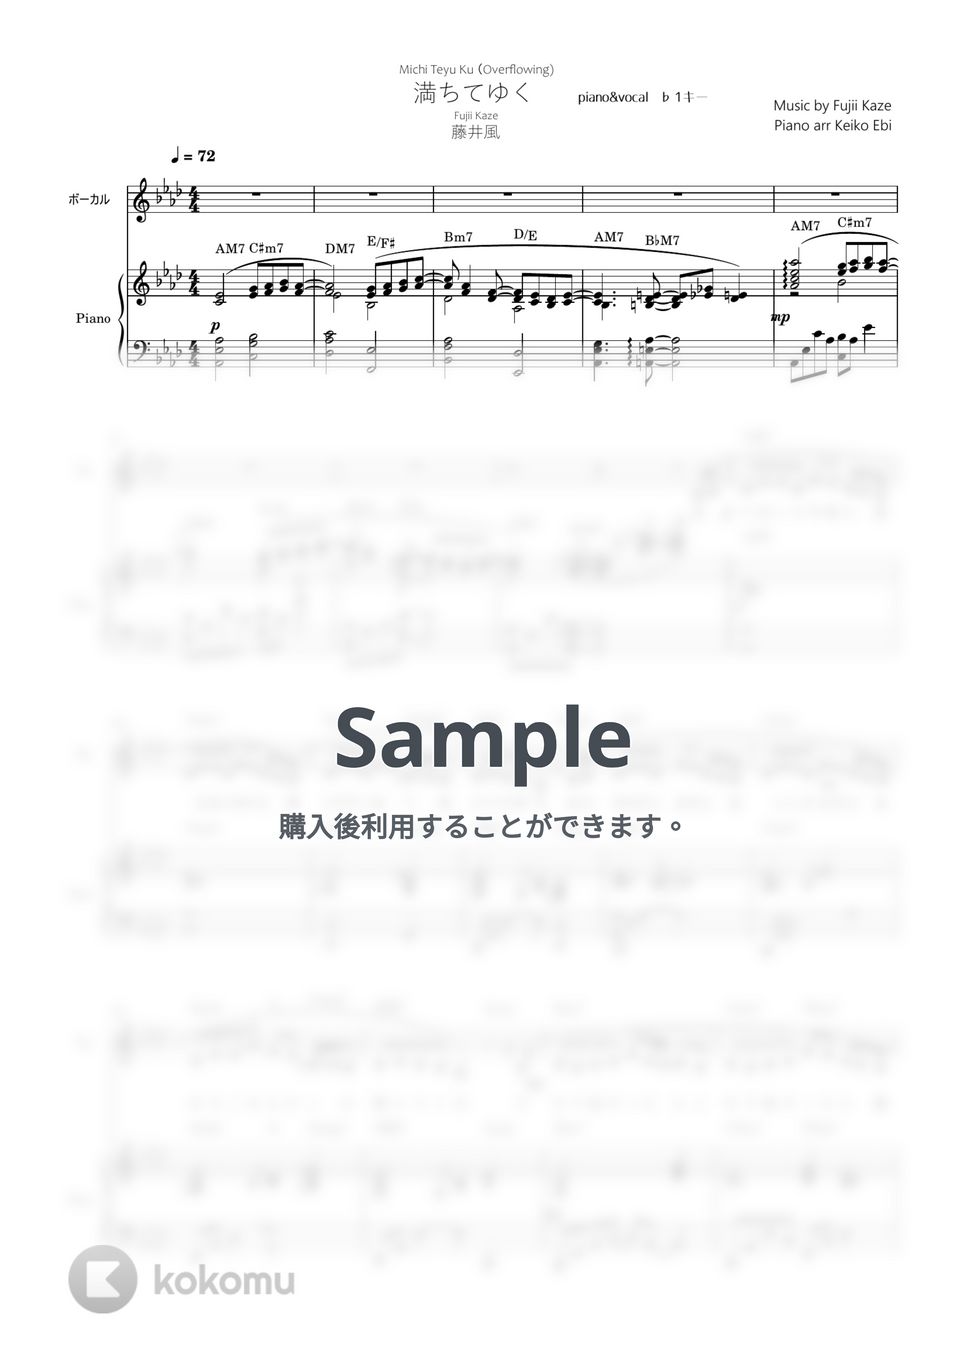 藤井風 - 満ちてゆく♭1キー弾き語り(piano&vocal楽譜) by KEIKO EBI